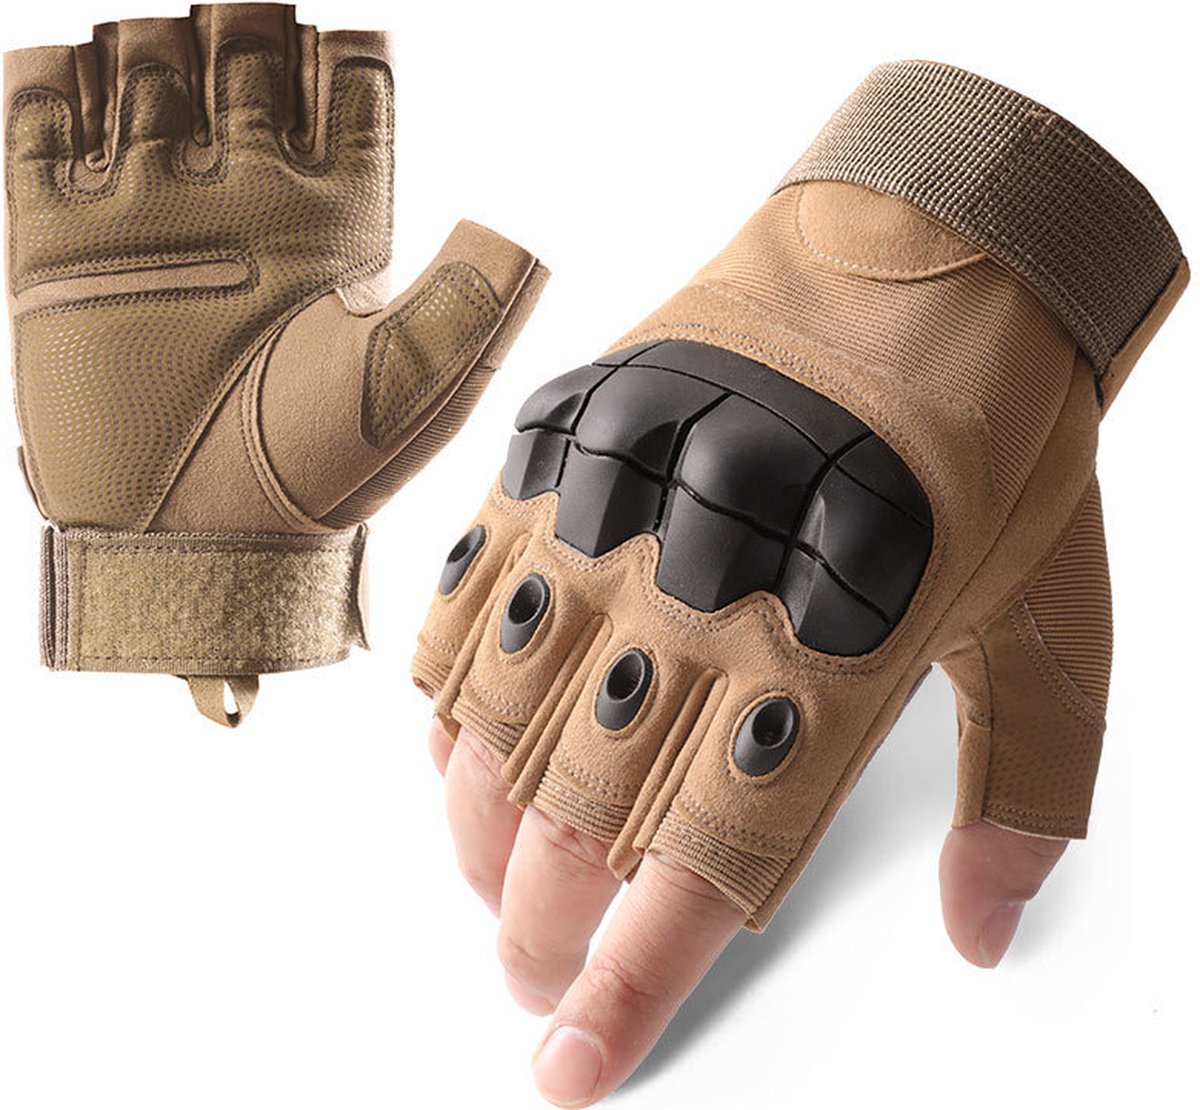 Nixnix - Zomer Vingerloze Motorhandschoenen - Sand - Harde Knokkels - Hand Handschoenen - Training handschoenen - Sport handschoenen